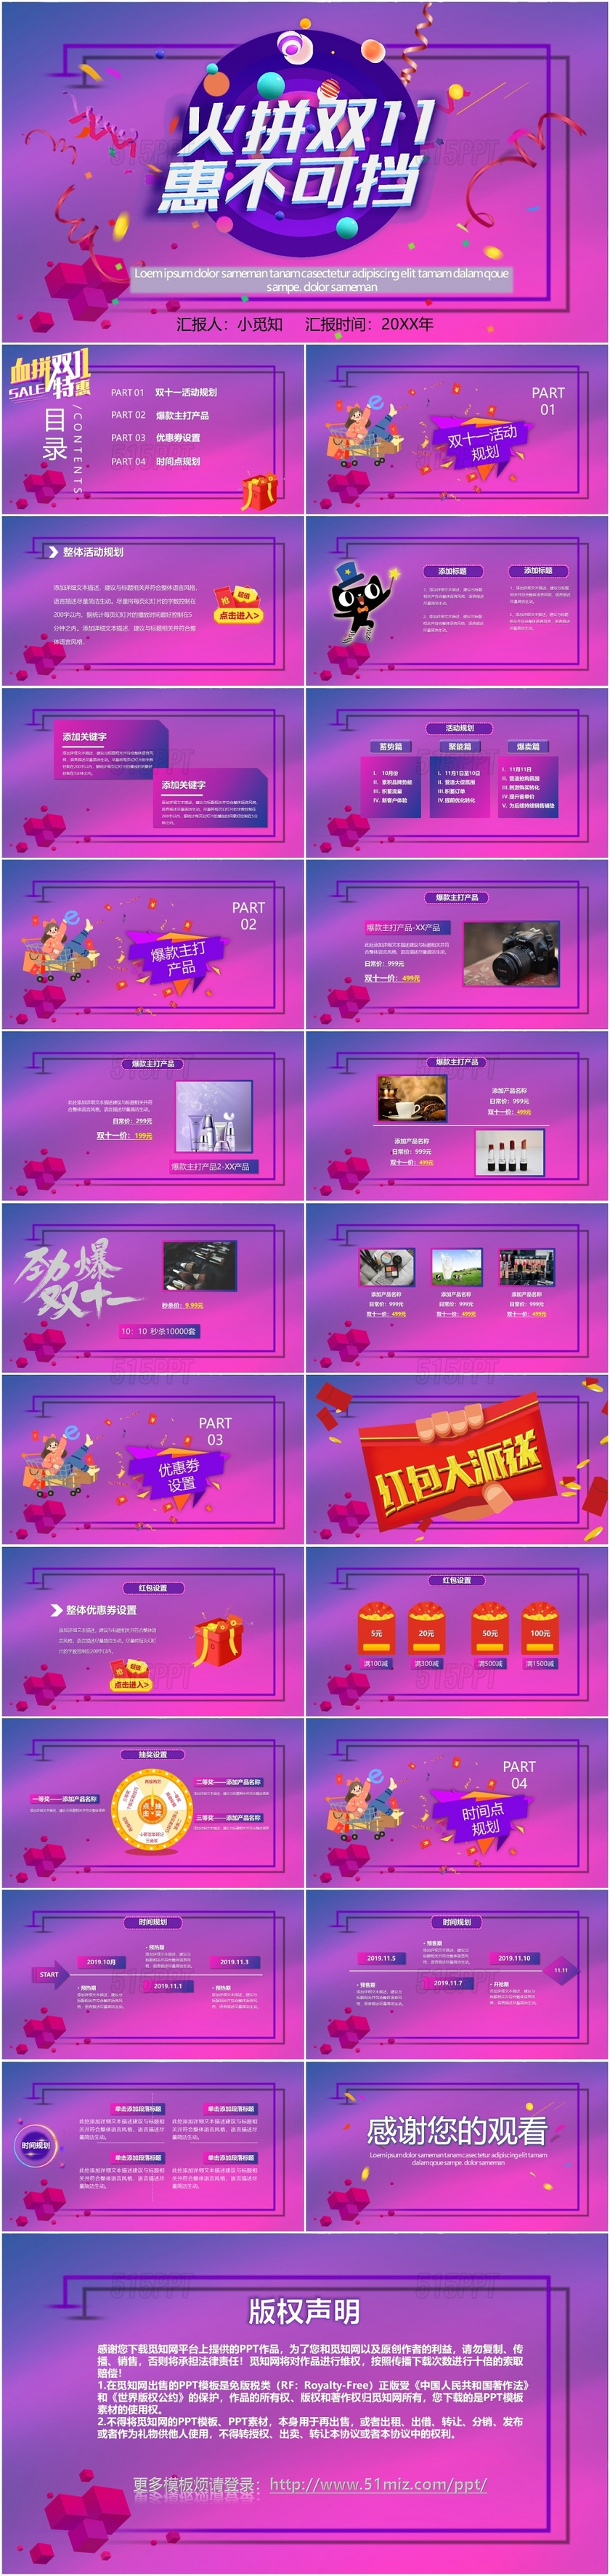 炫彩紫色购物狂欢节双十一购物街促销营销淘宝PPT模板电商炫彩双十一